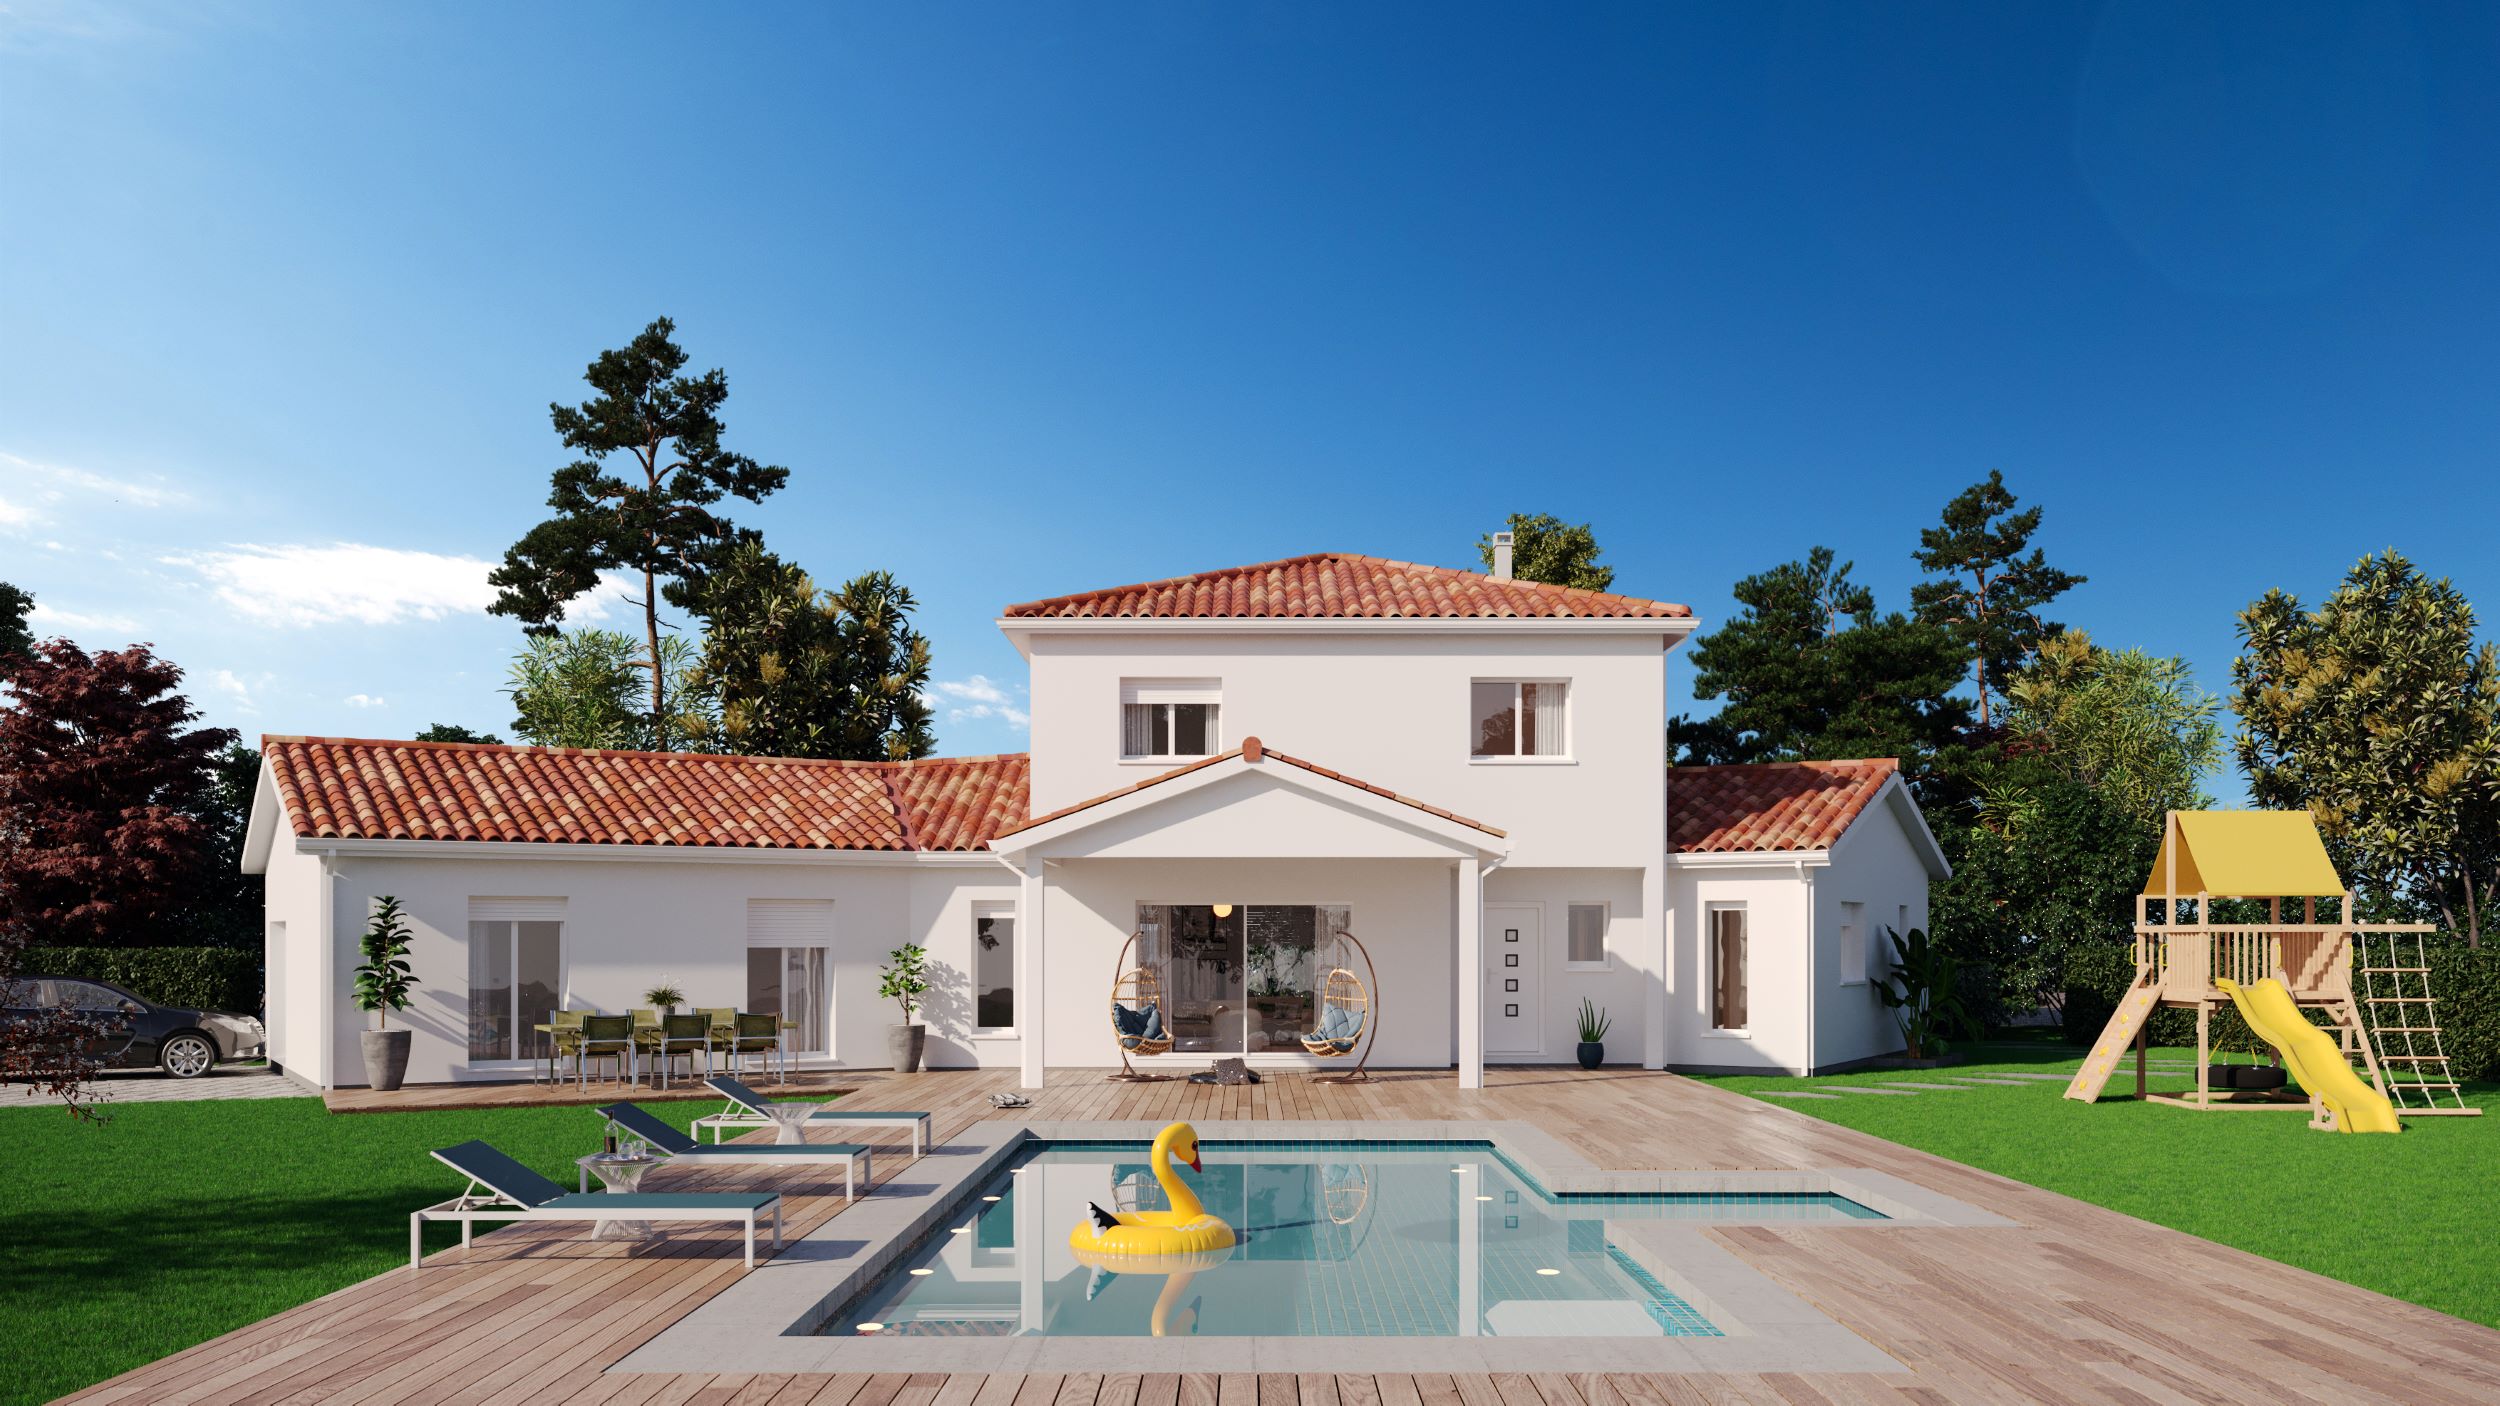 Maison à étage avec garage et une piscine